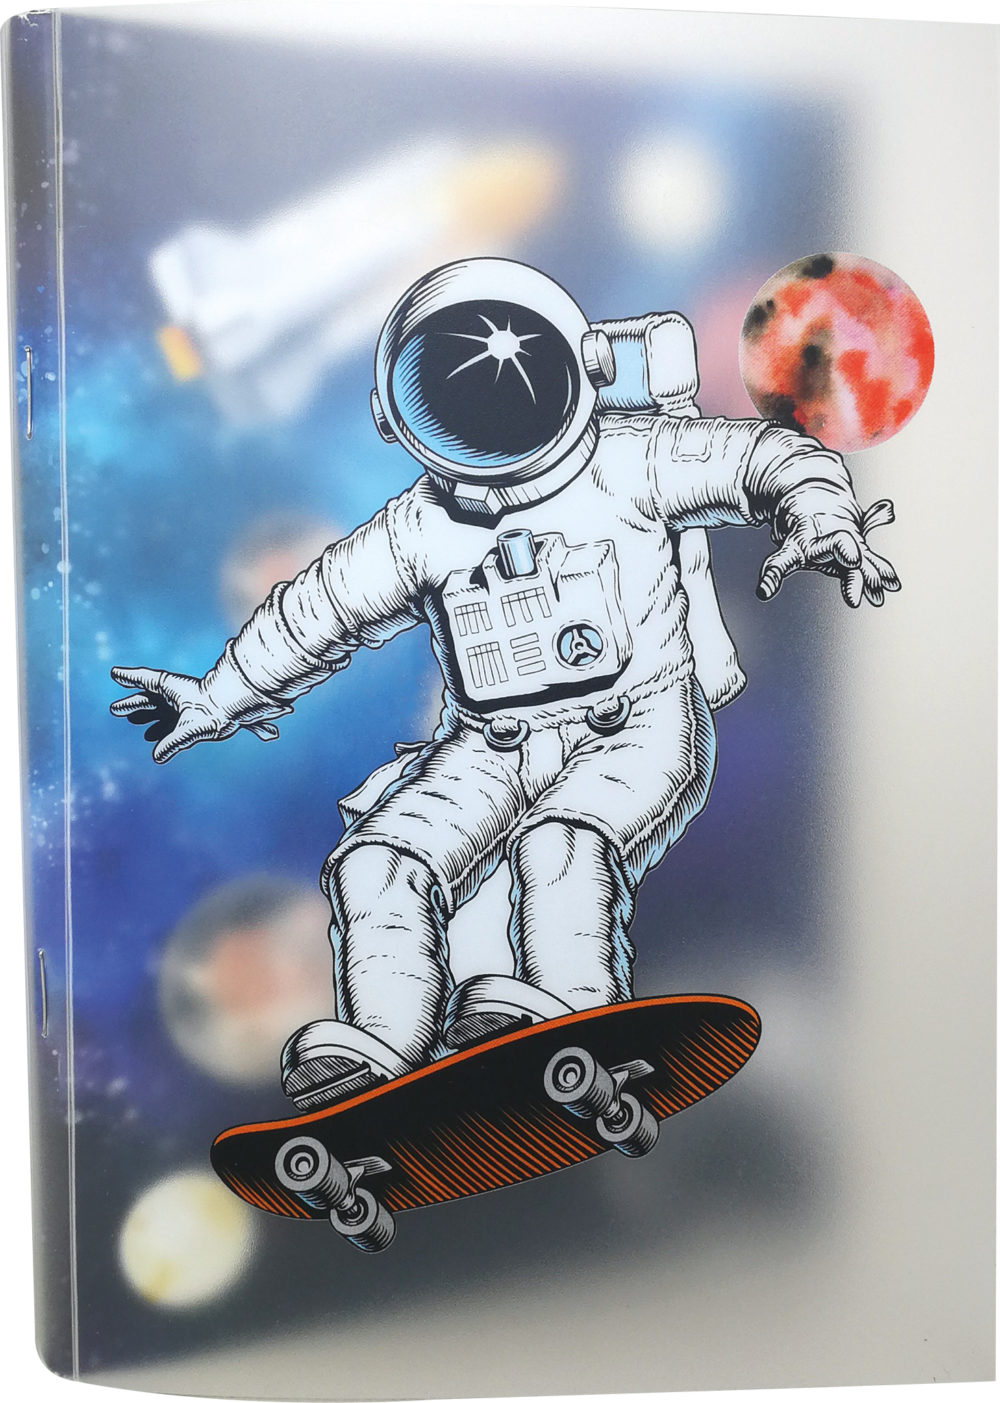 Softcover-Heft "Skatonaut" mit einem Astronauten drauf, der sich auf den Hintergrund ergänzt